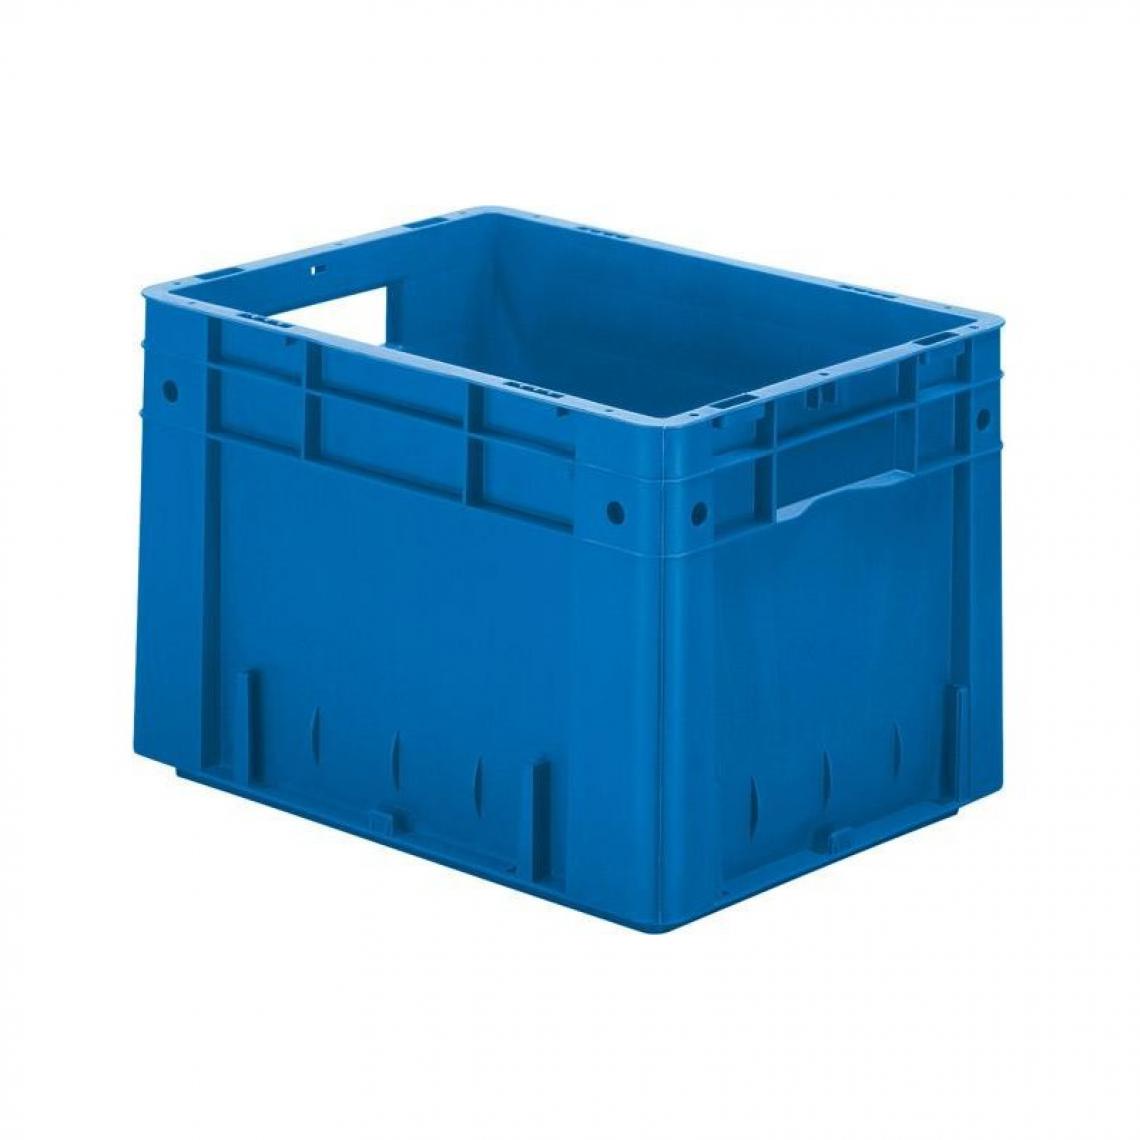 marque generique - Caisse de transport VTK 400/270-0 bleu - Coffres